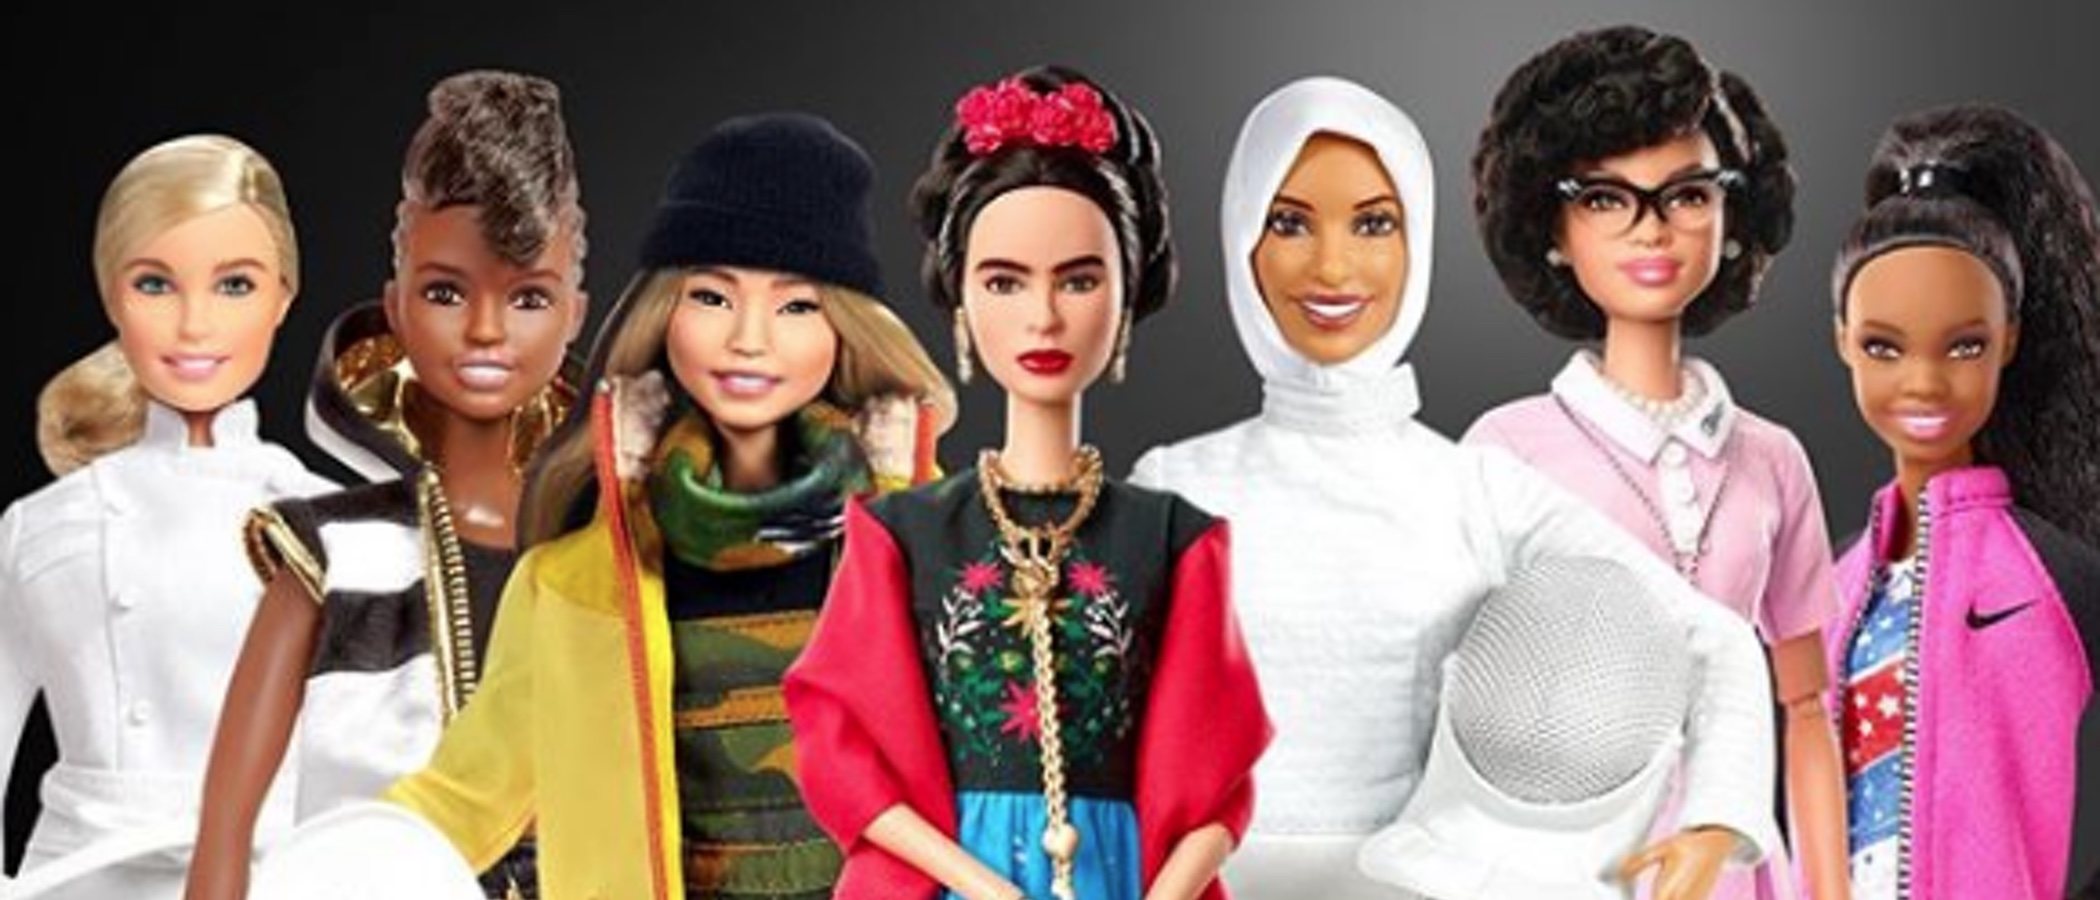 Barbie celebra el Día Internacional de la Mujer rindiendo homenaje a mujeres que hicieron historia